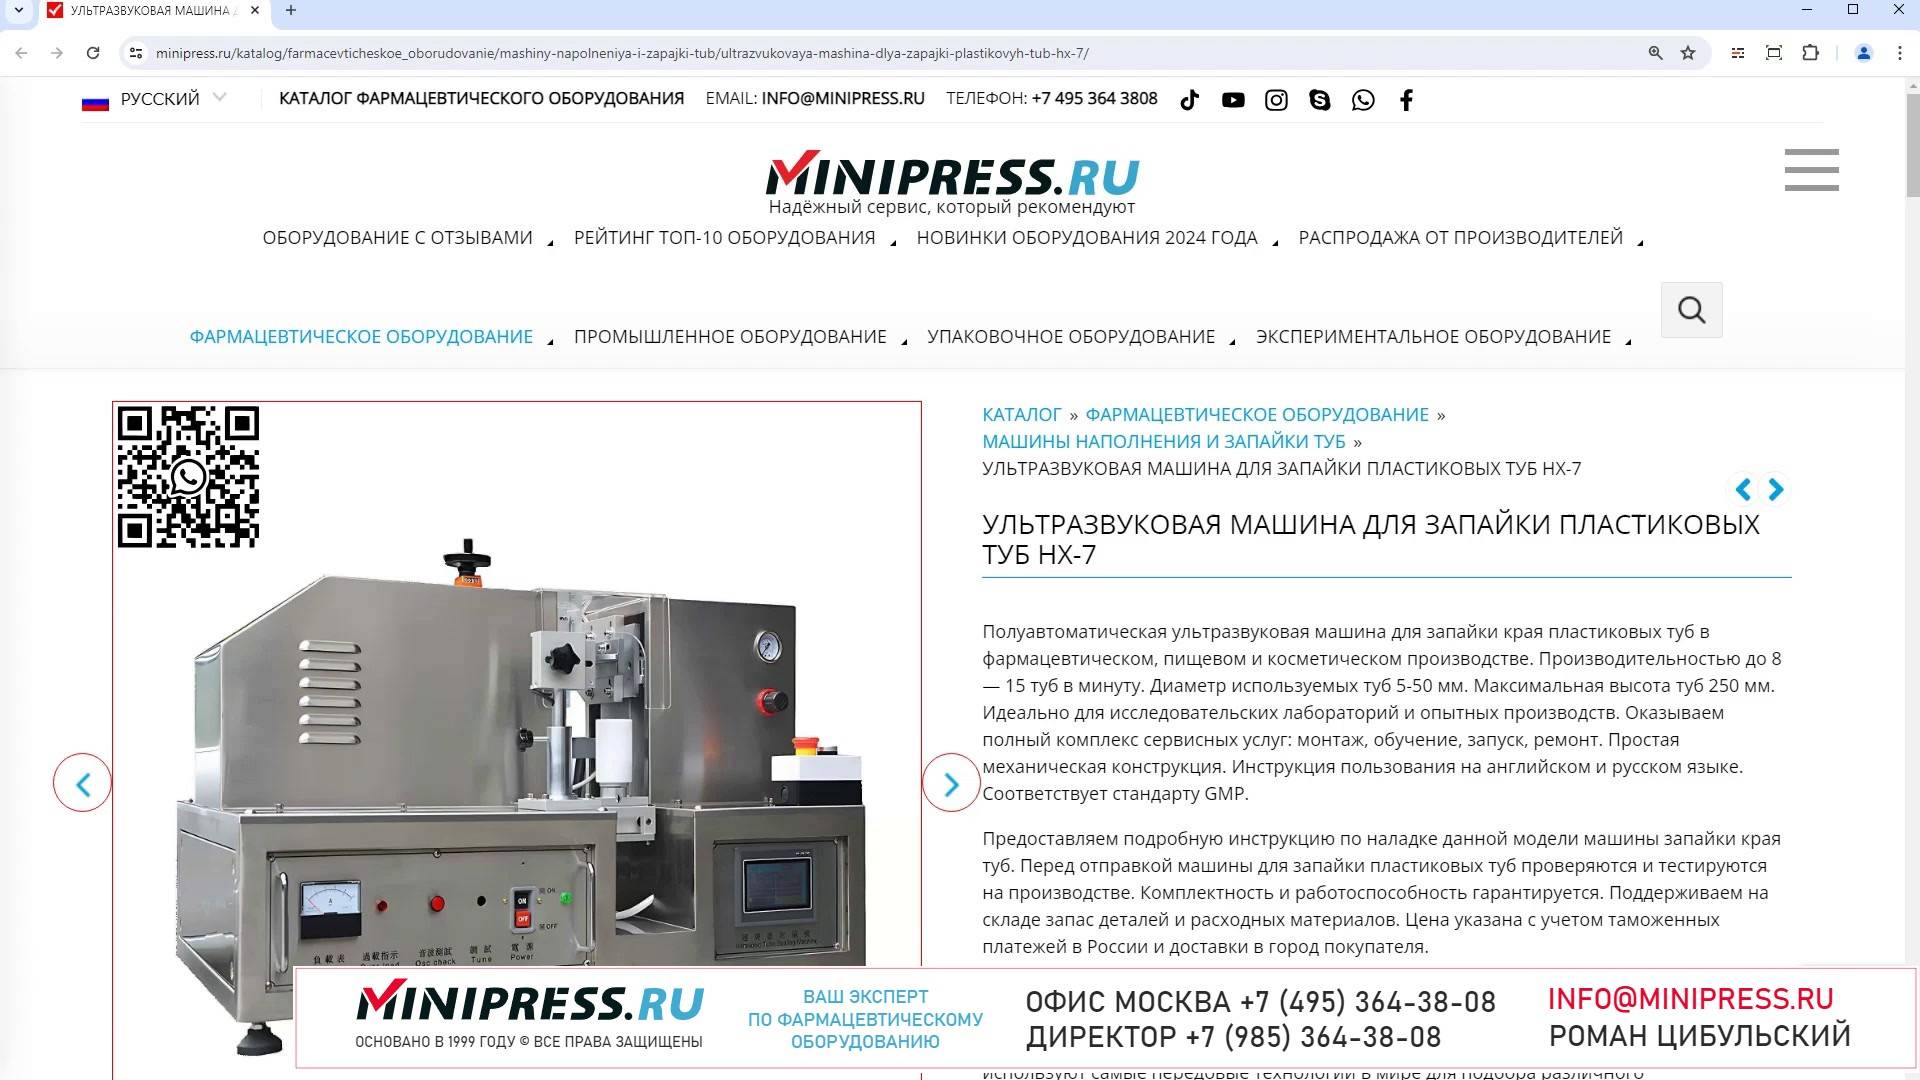 Minipress.ru Ультразвуковая машина для запайки пластиковых туб HX-7